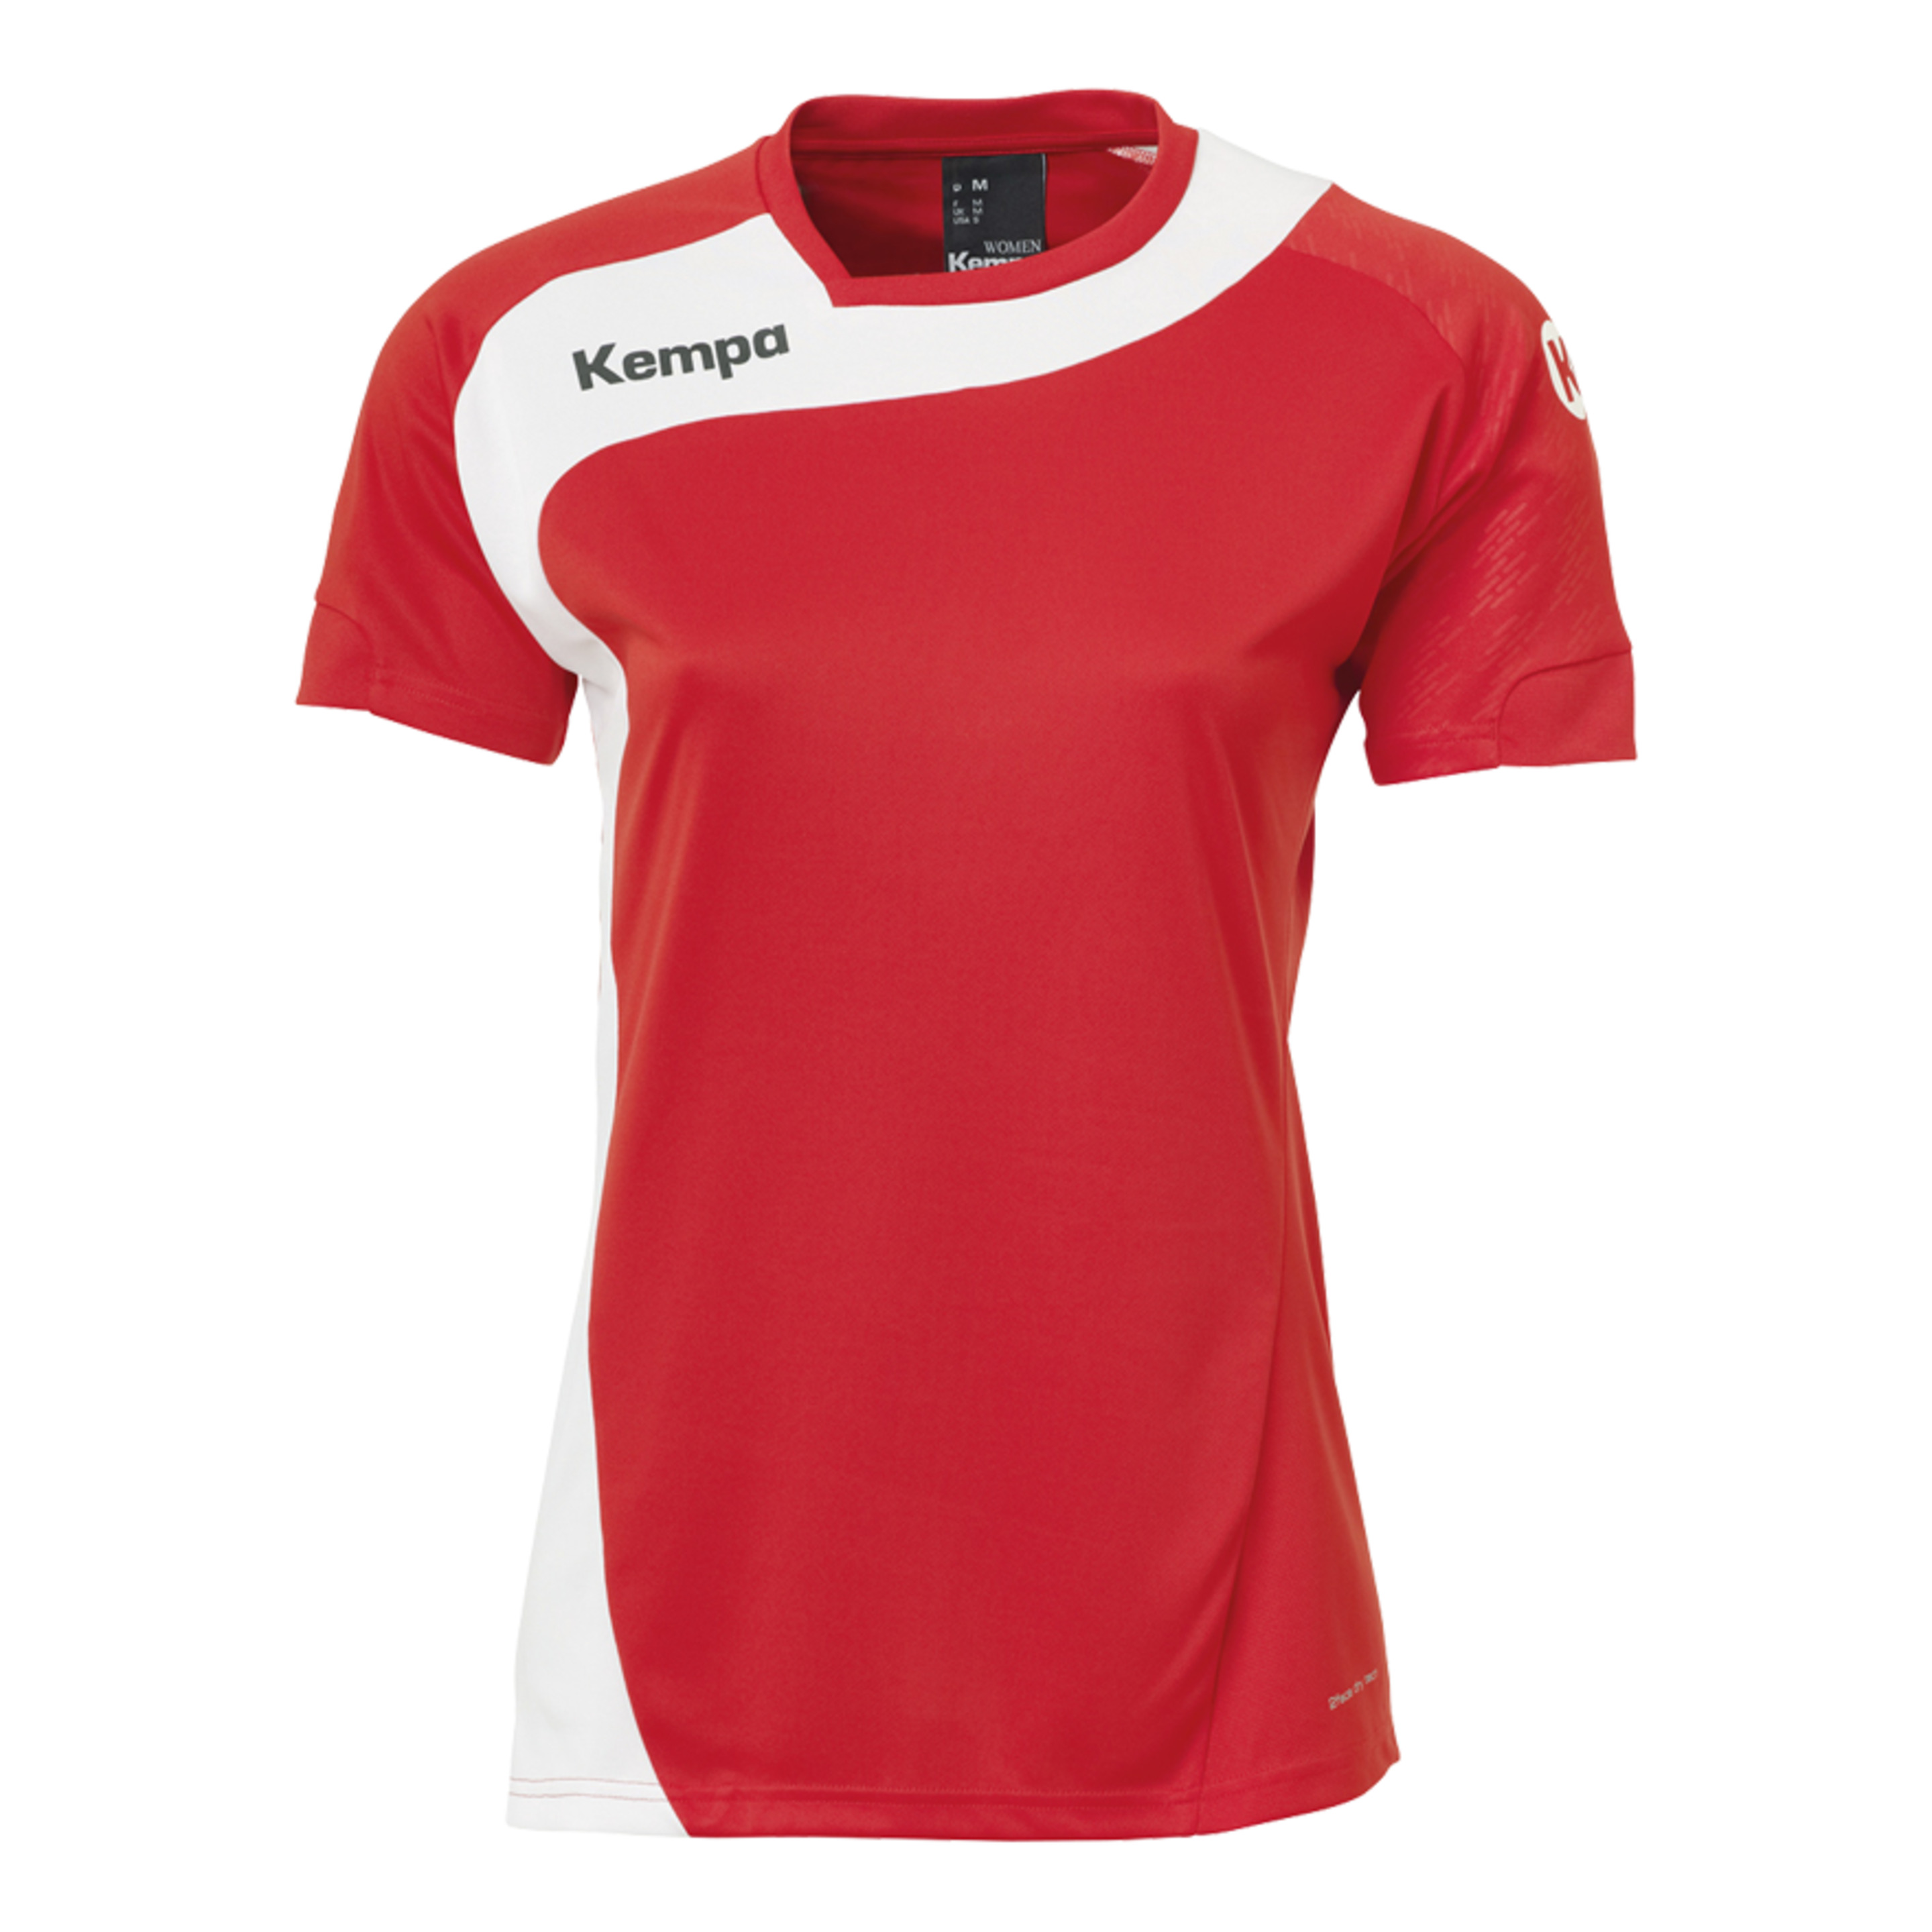 Peak Camiseta De Mujer Rojo/blanco Kempa - rojo - 